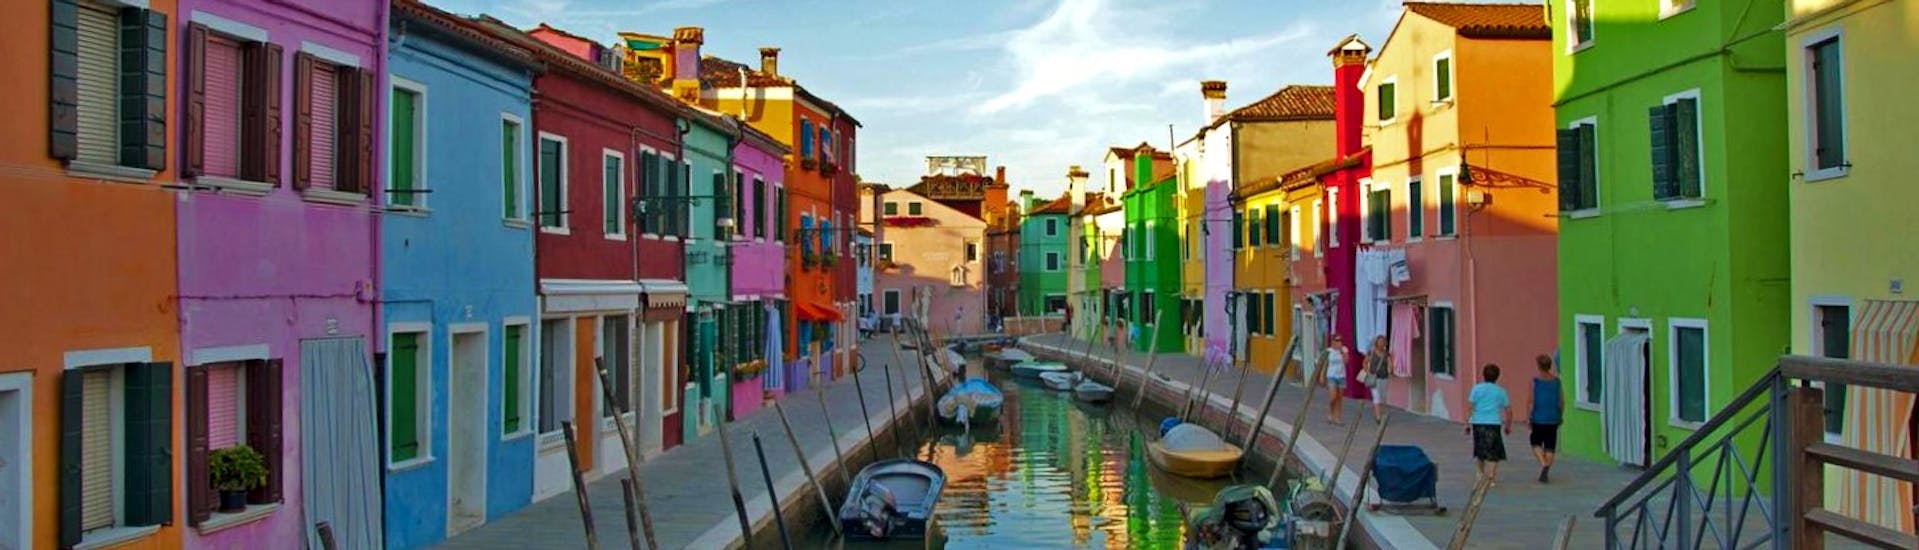 Bellissima foto dei particolari edifici di Burano, scattata durante una gita in barca da Venezia alle isole Murano e Burano con Park View Viaggi.